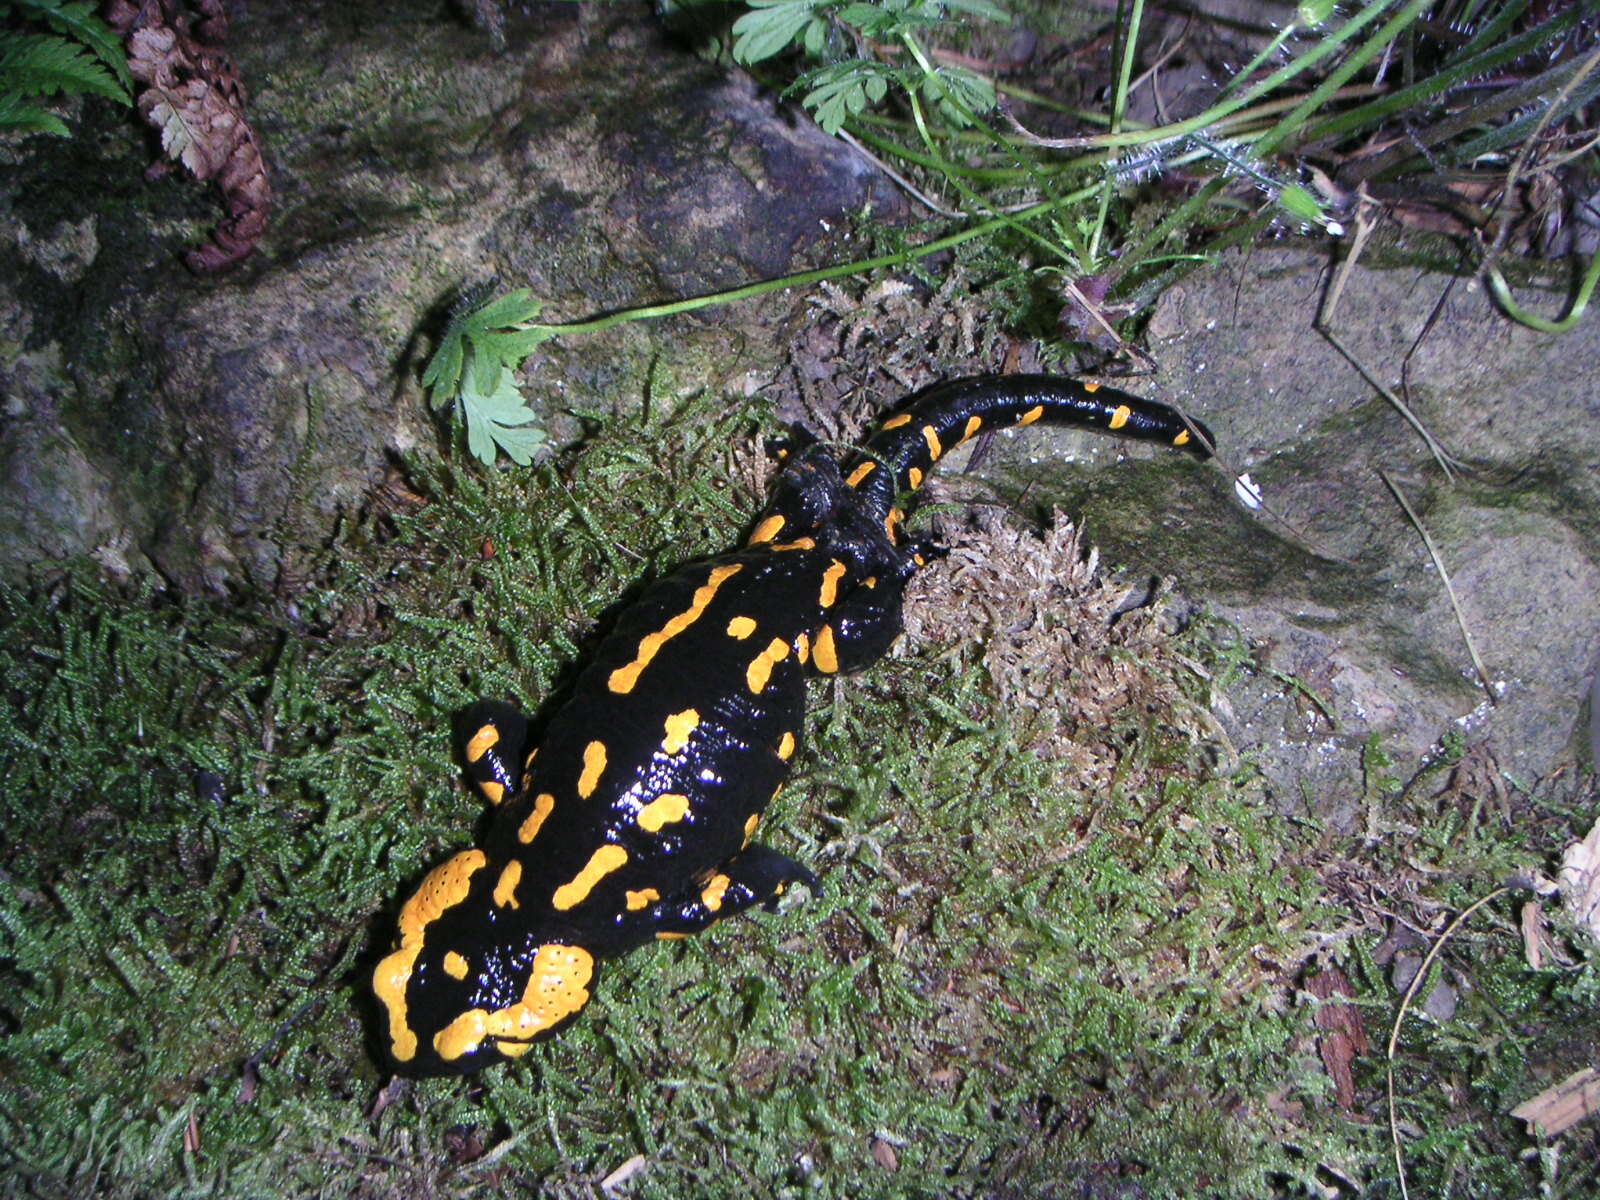 Image of Salamandra salamandra salamandra